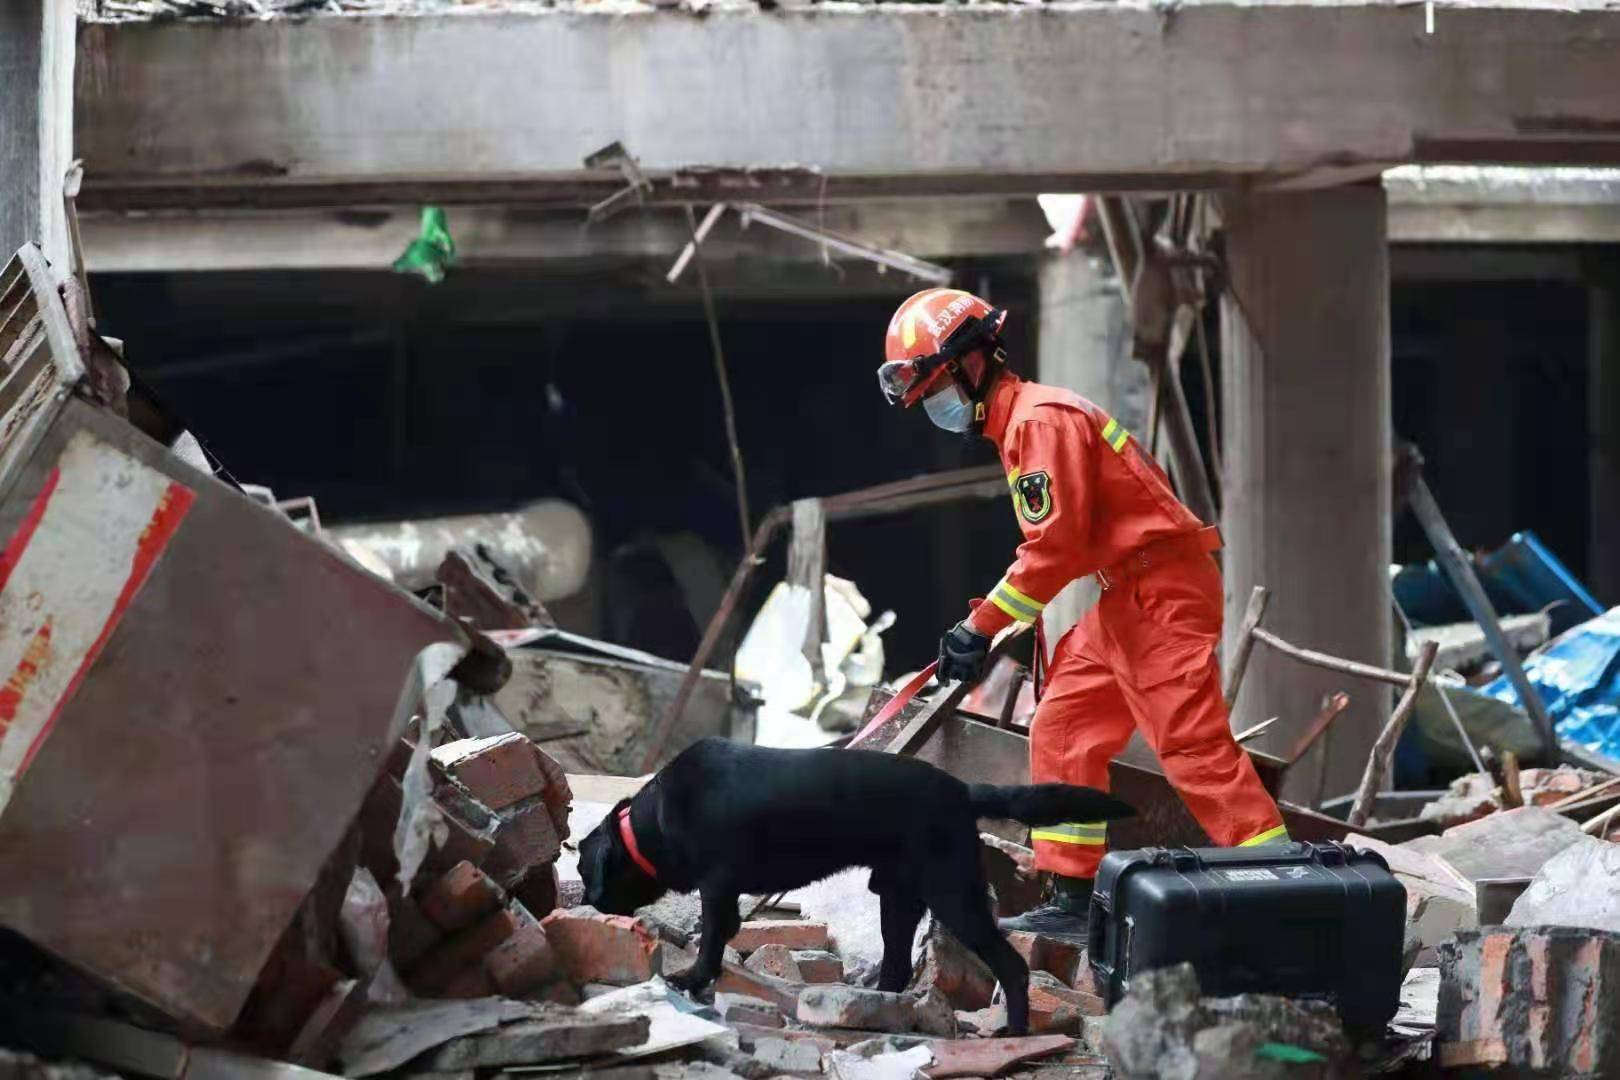 湖南汝城一房屋垮塌 当地已组织消防、武警等进行救援 - 封面新闻